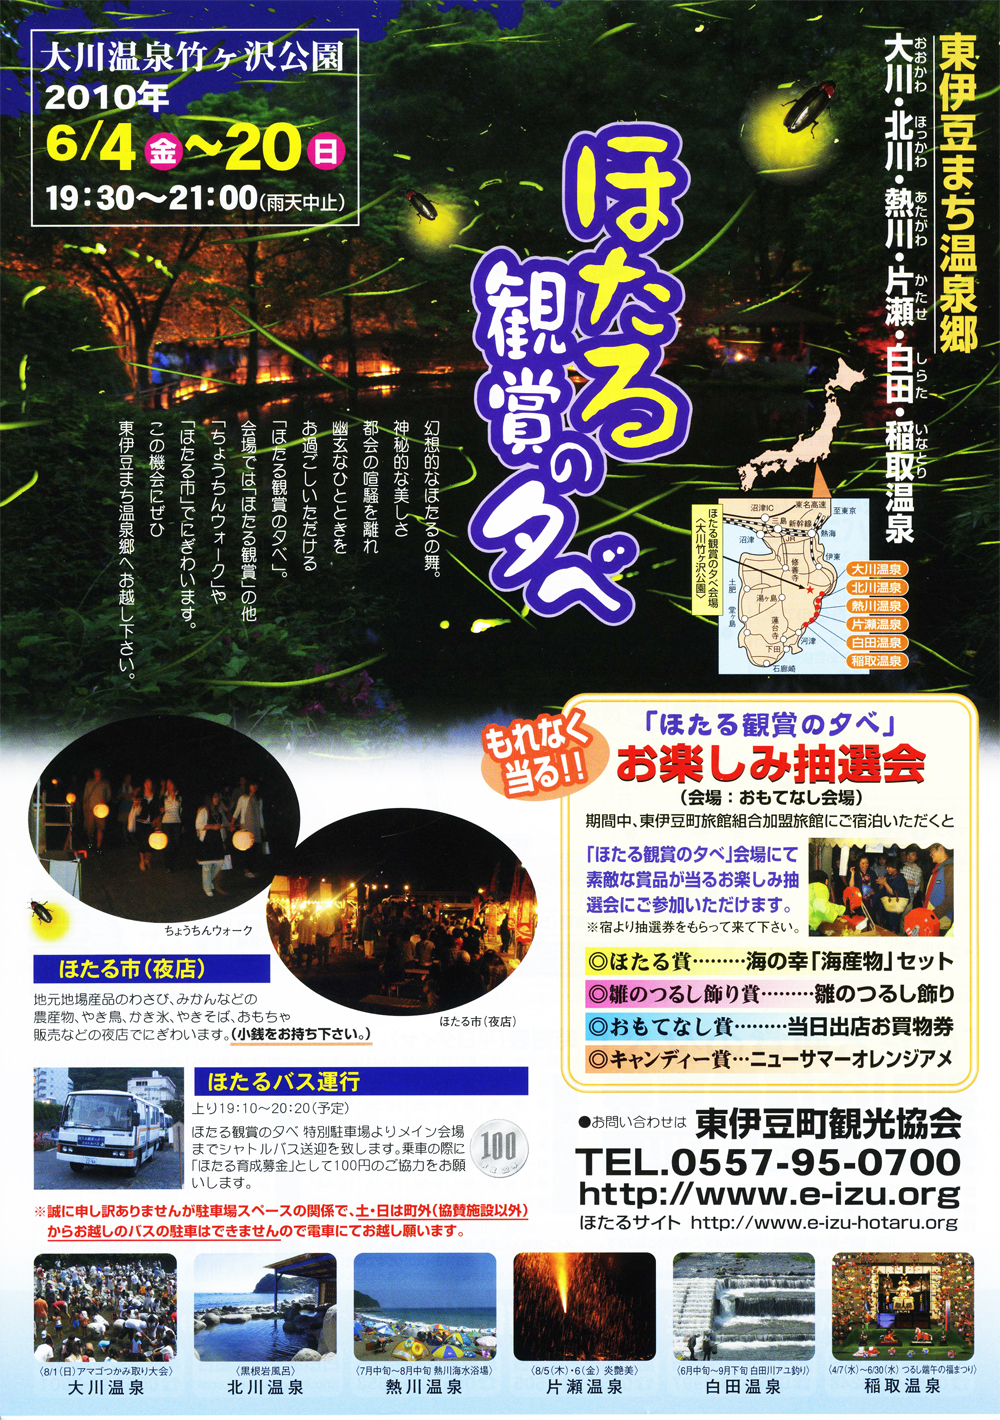 6月の伊豆最大のイベント 東伊豆町 ほたる観賞の夕べ 開催のお知らせ 東伊豆町観光協会のプレスリリース